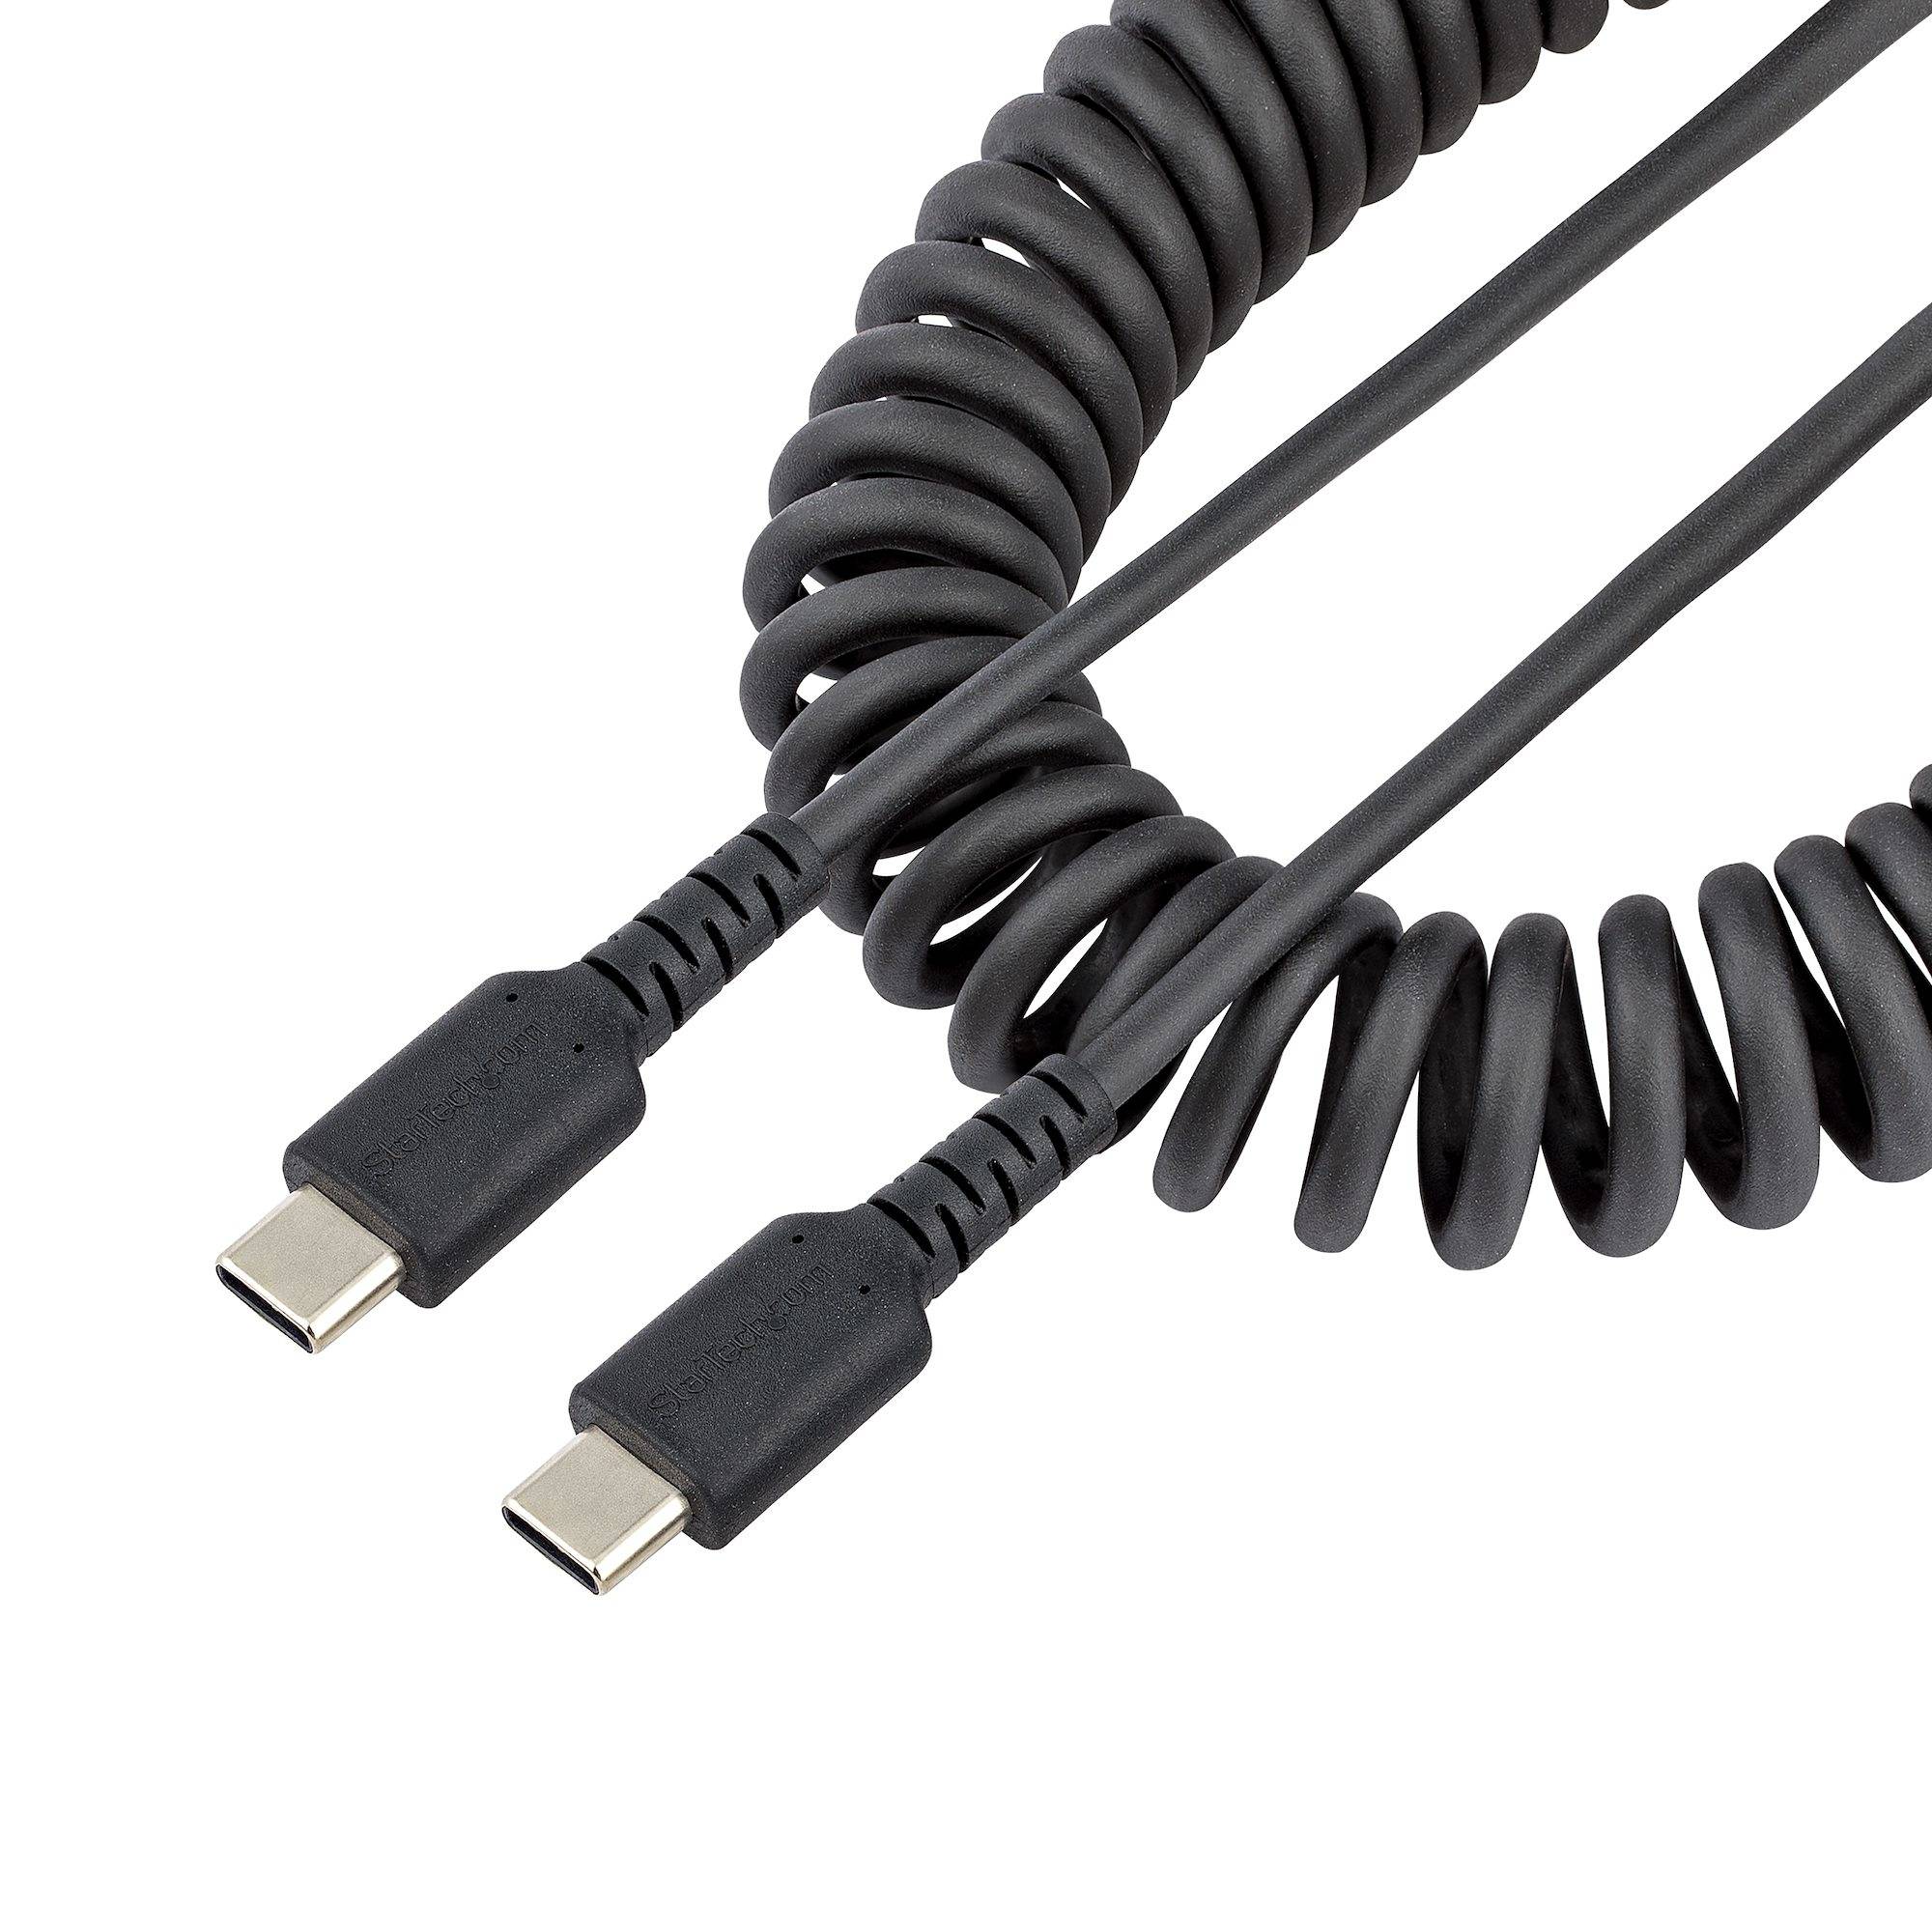 Rca Informatique - Image du produit : CABLE DE CHARGE USB-C DE 1M - CORDON USB-C A USB-C M/M - NOIR